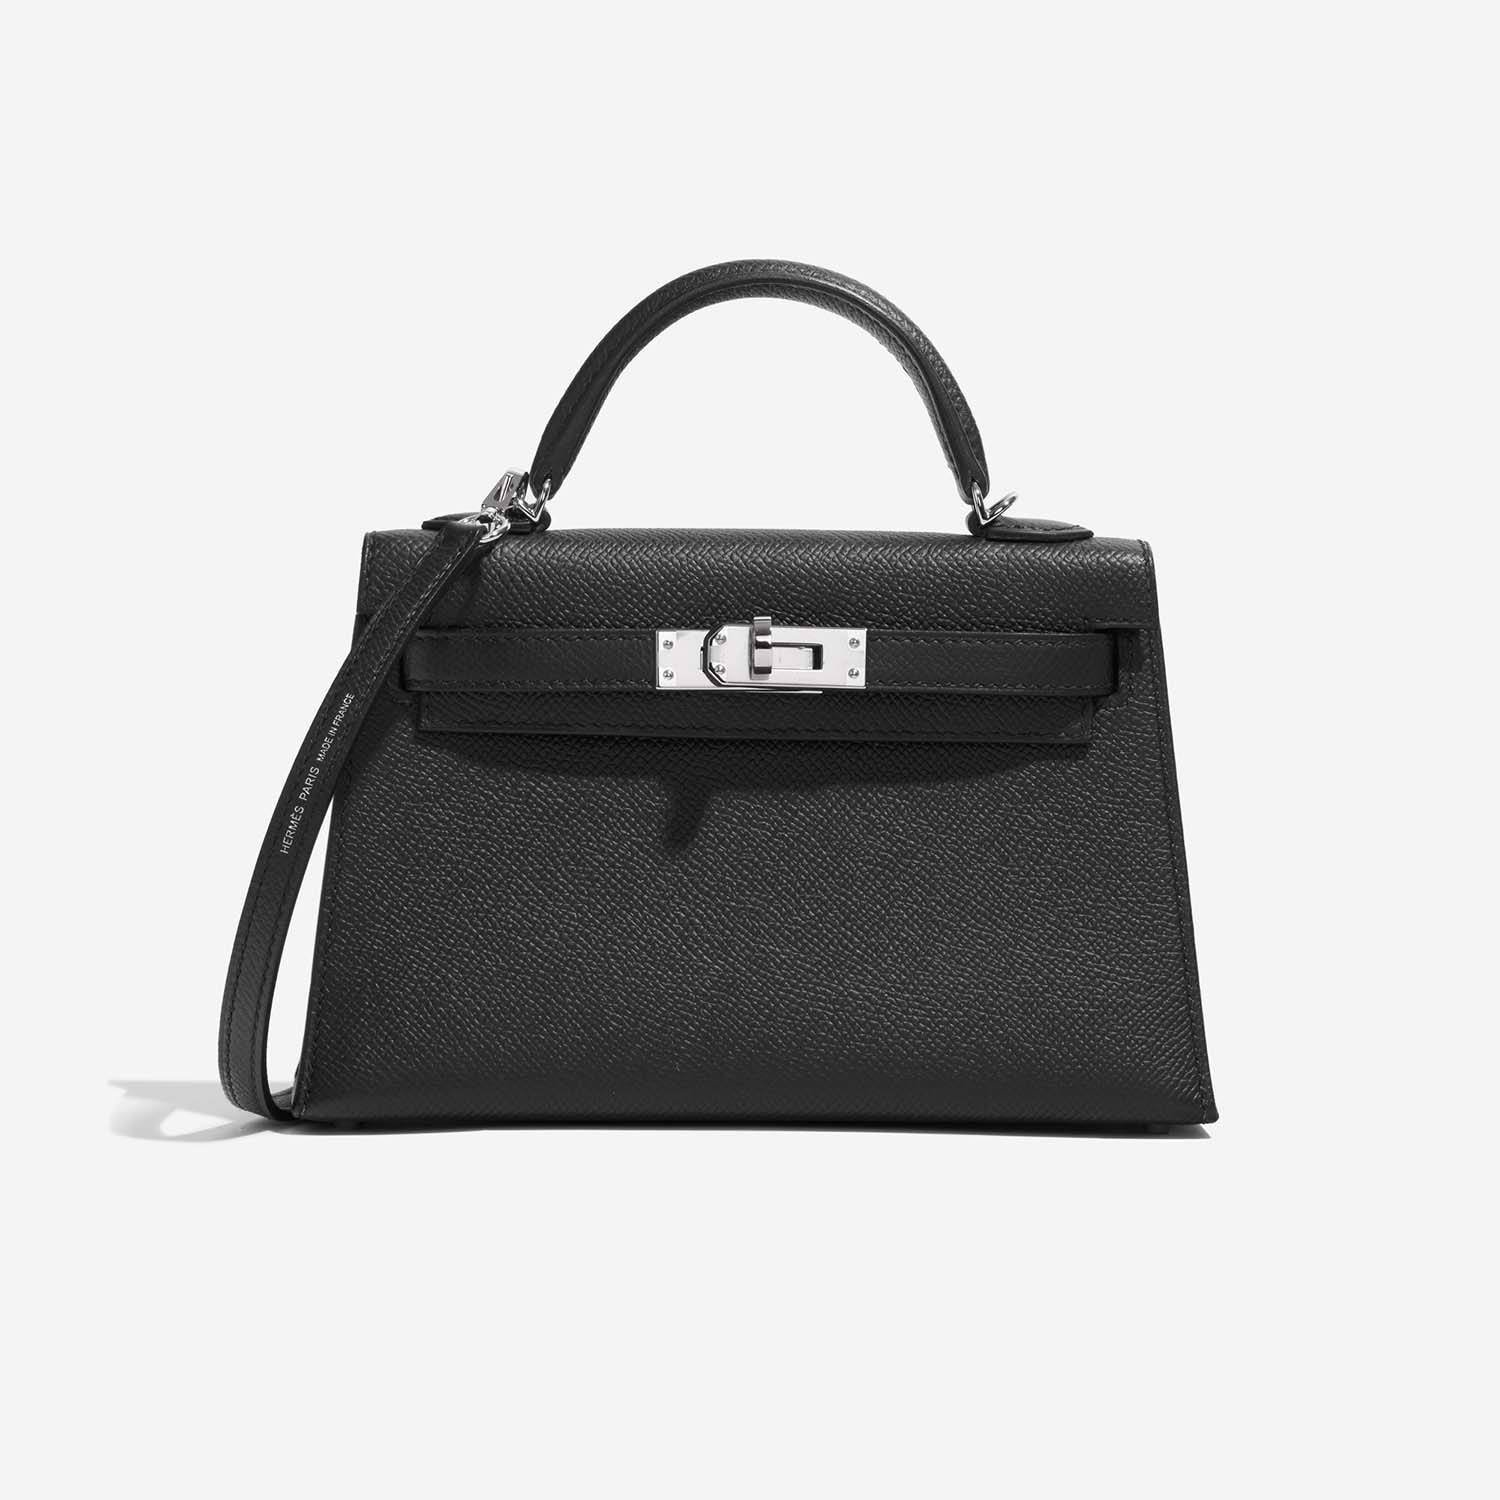 Hermès Kelly Mini Black Front | Verkaufen Sie Ihre Designer-Tasche auf Saclab.com